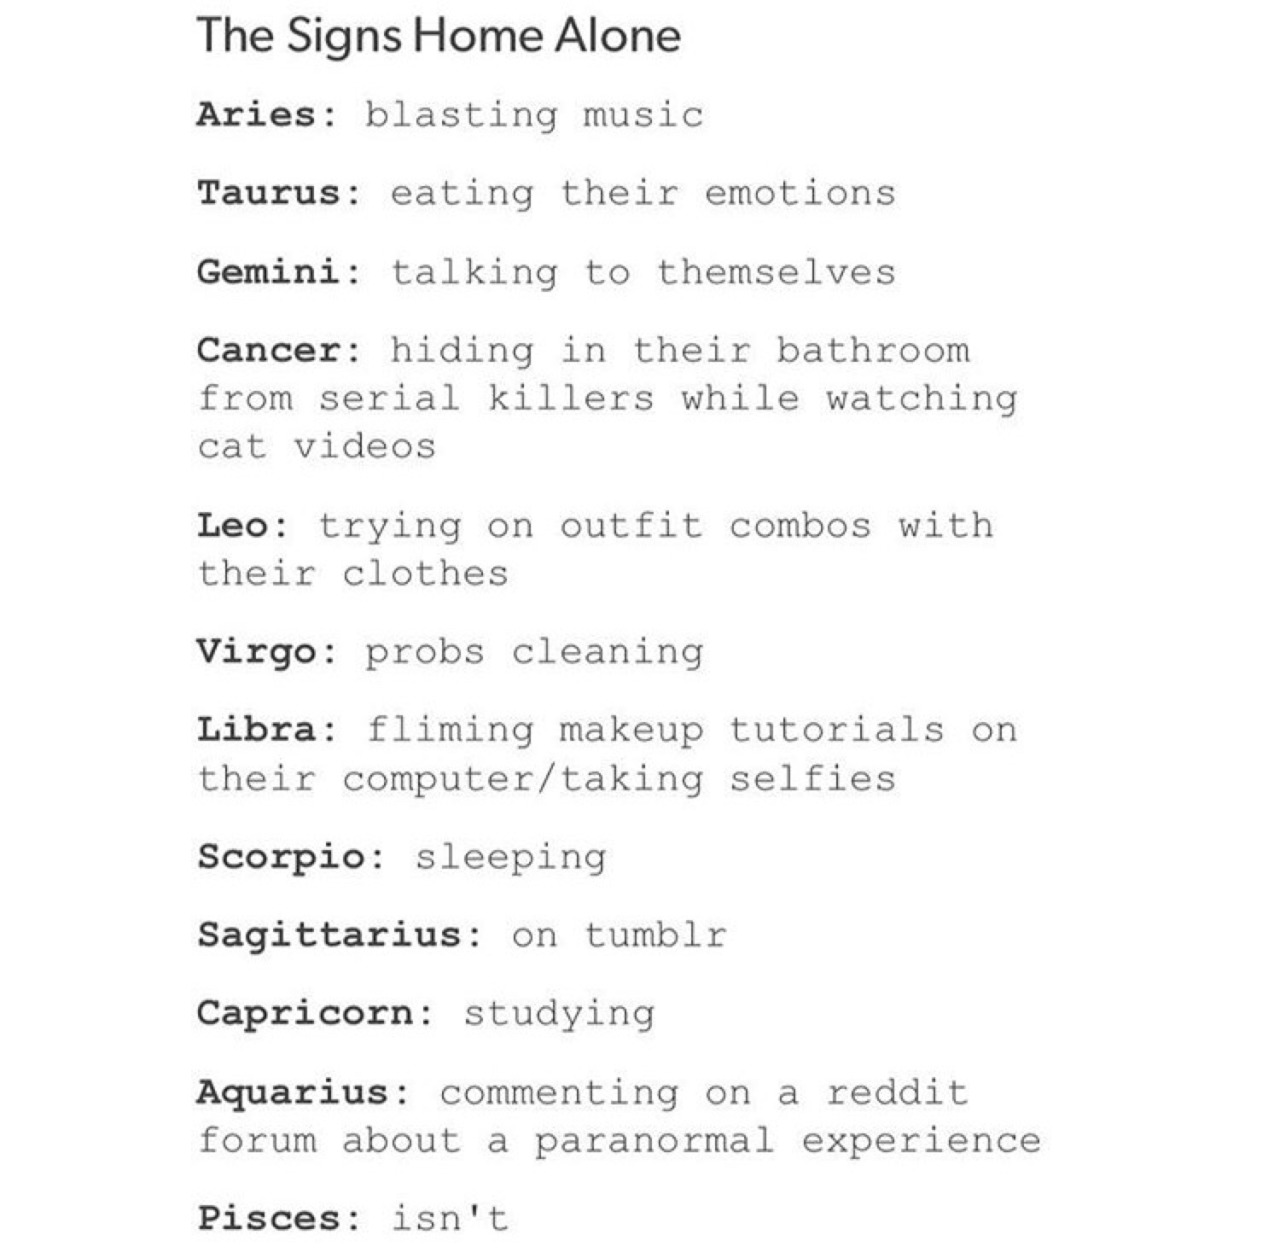 Que signo do zodíaco está em casa sozinho?